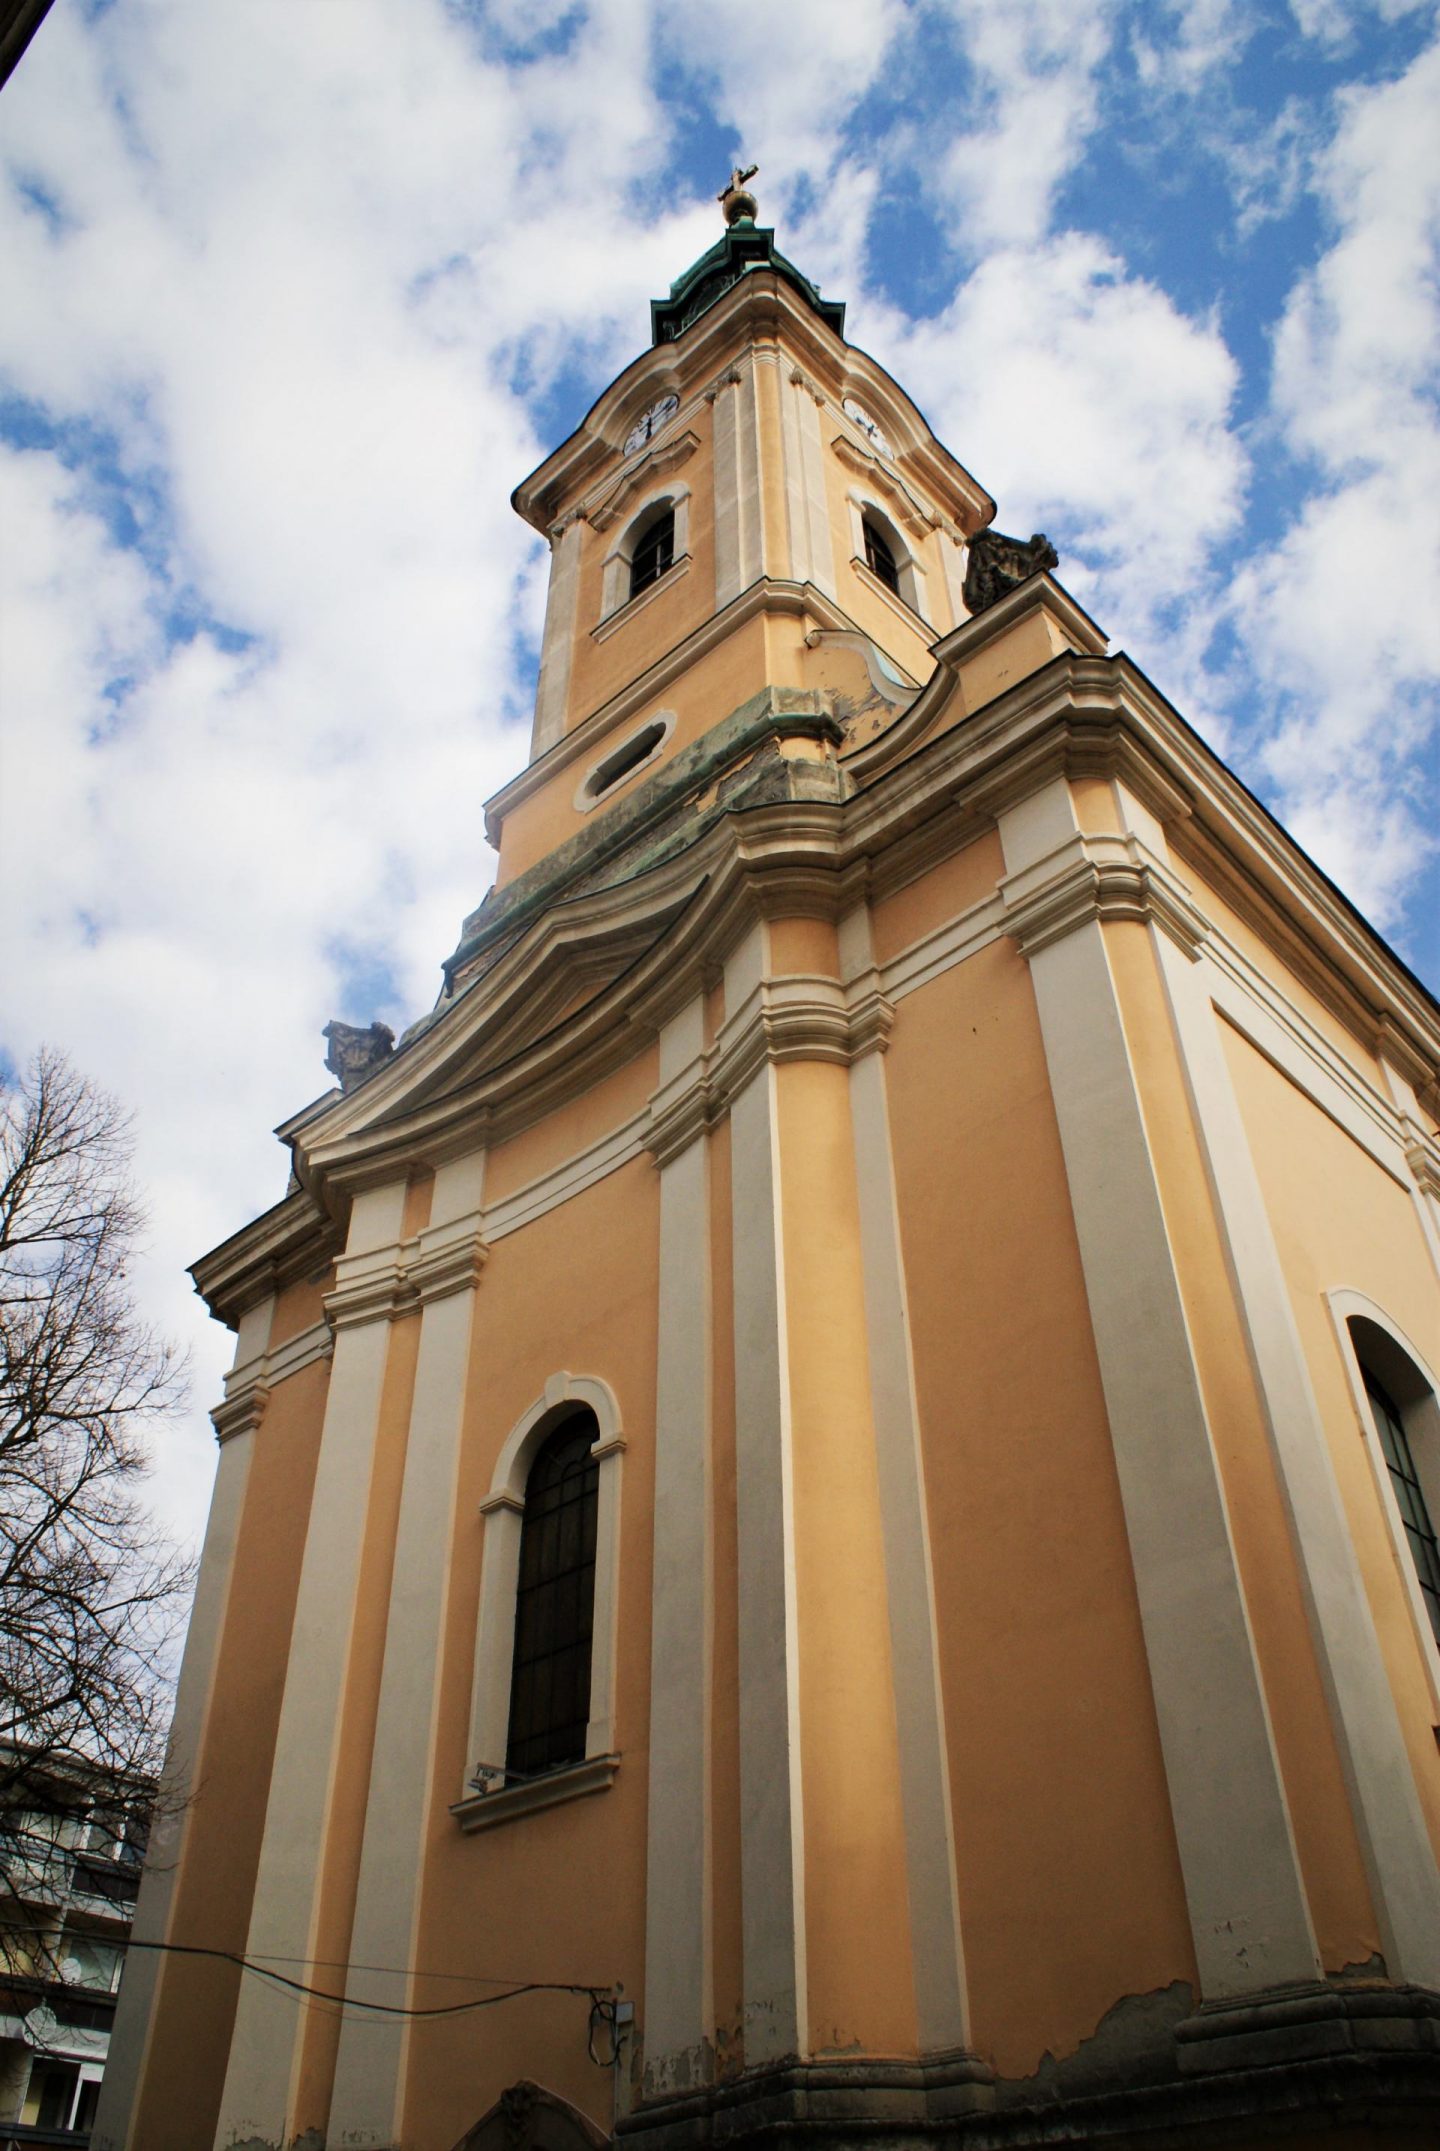 Srpska crkva u Segedinu © According to Kristina